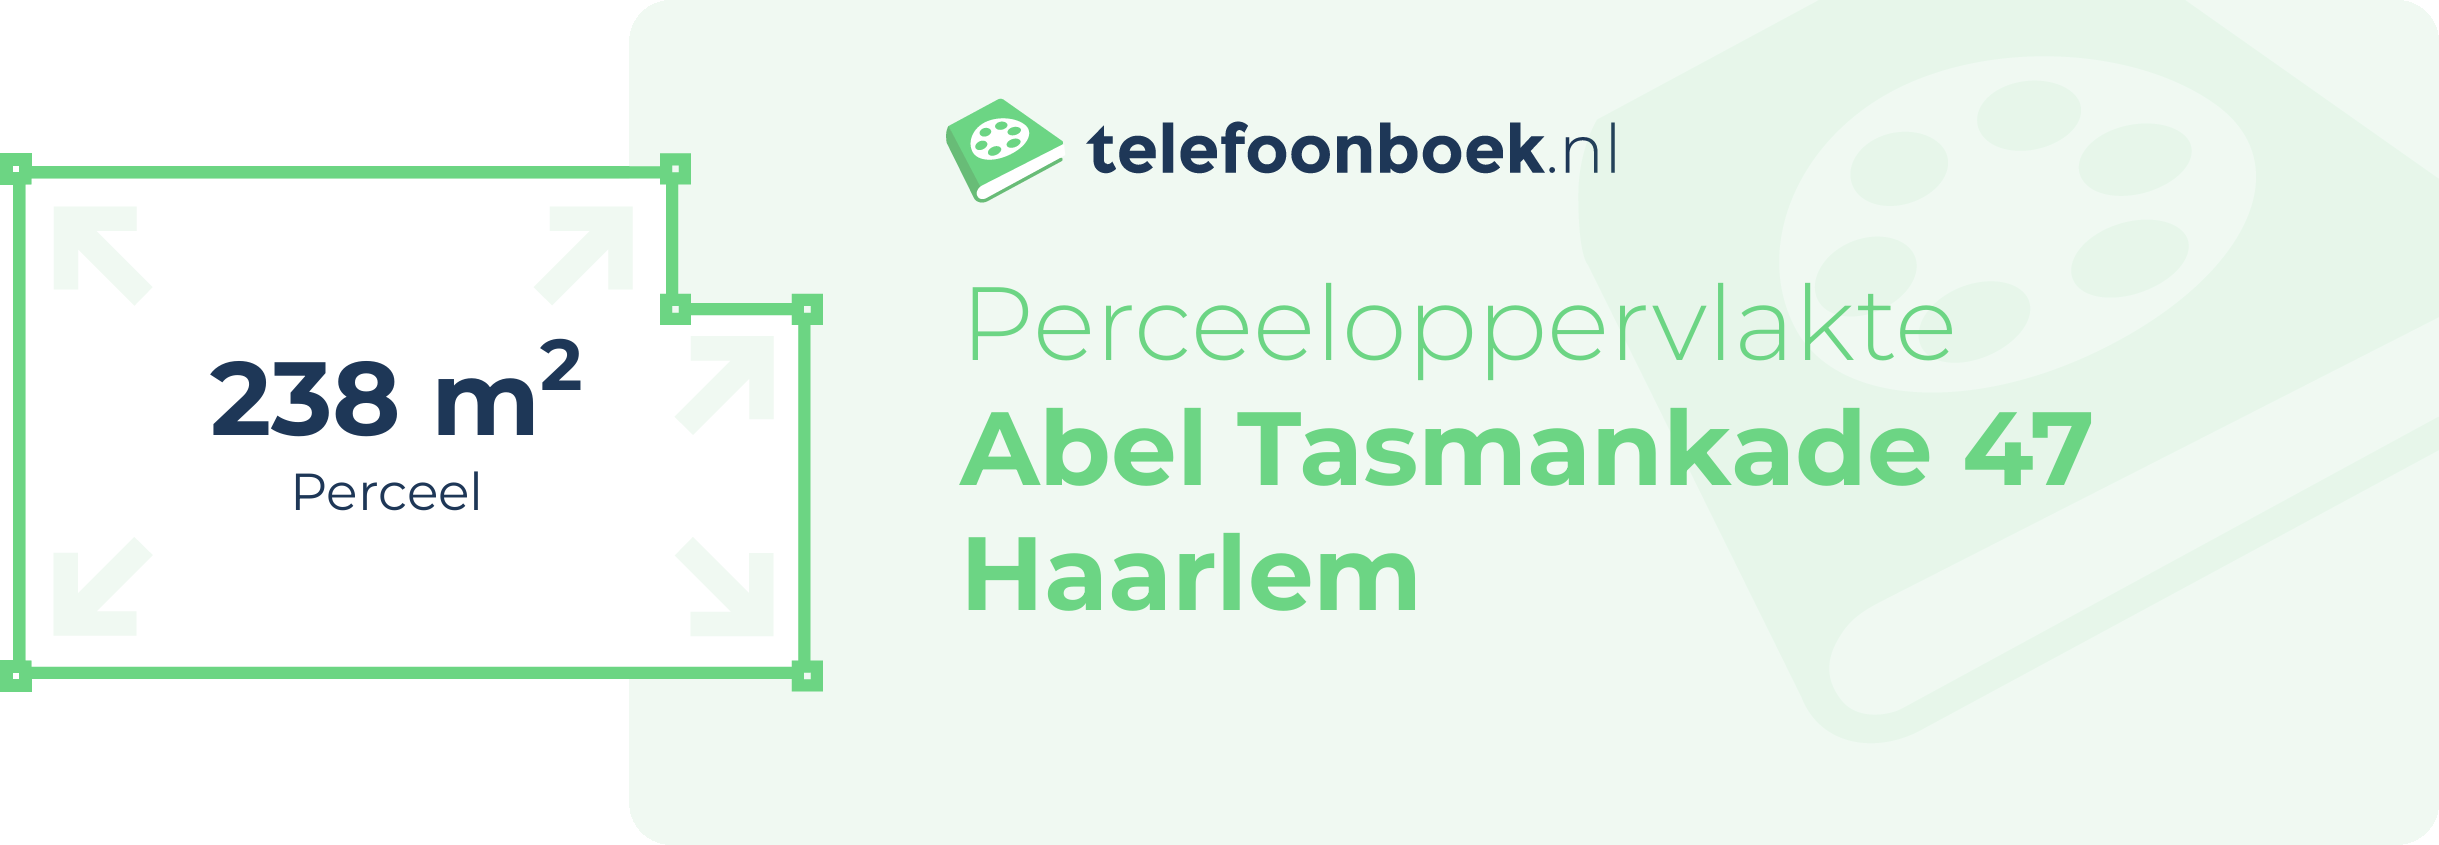 Perceeloppervlakte Abel Tasmankade 47 Haarlem